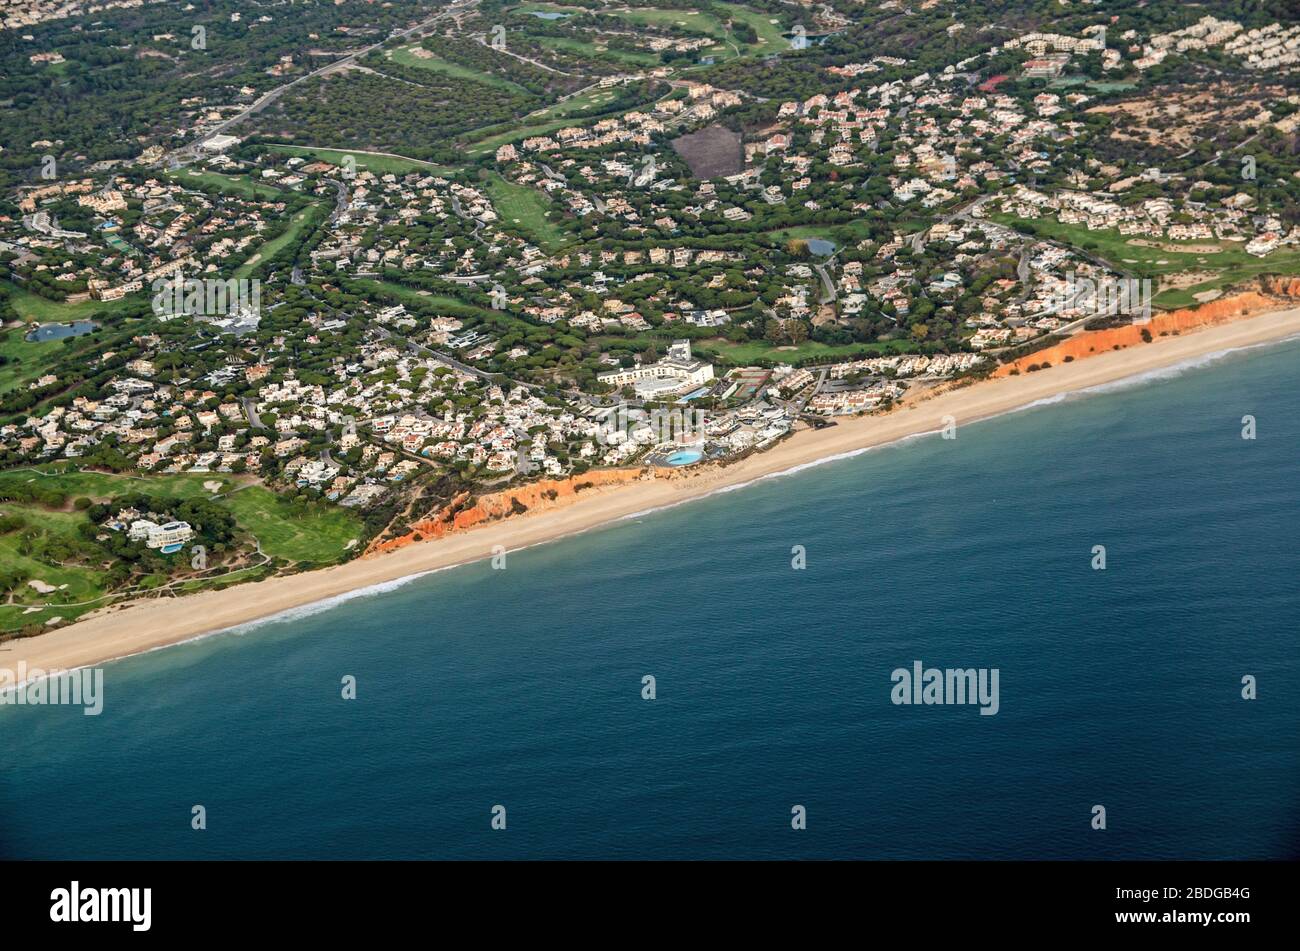 Veduta aerea della località costiera di Praia de vale do Lobo sulla costa dell'Algarve a Faro, Portogallo. L'hotel 5 stelle Dona Filippa si trova nel centro della zona Foto Stock